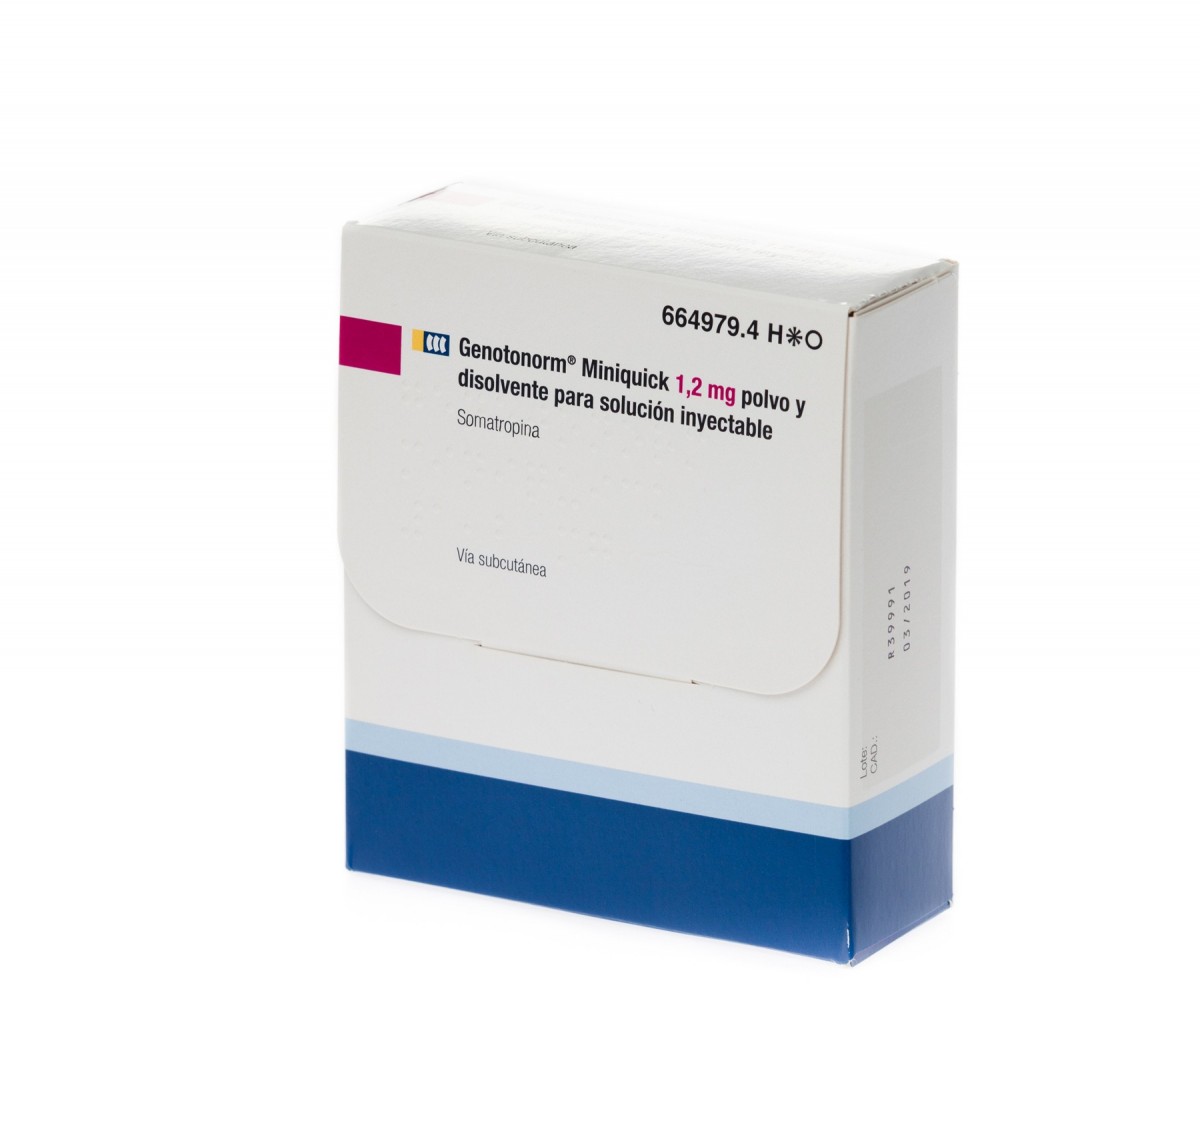 GENOTONORM MINIQUICK 1,2 mg POLVO Y DISOLVENTE PARA SOLUCION INYECTABLE 28 (4 x 7) viales de doble cámara fotografía del envase.